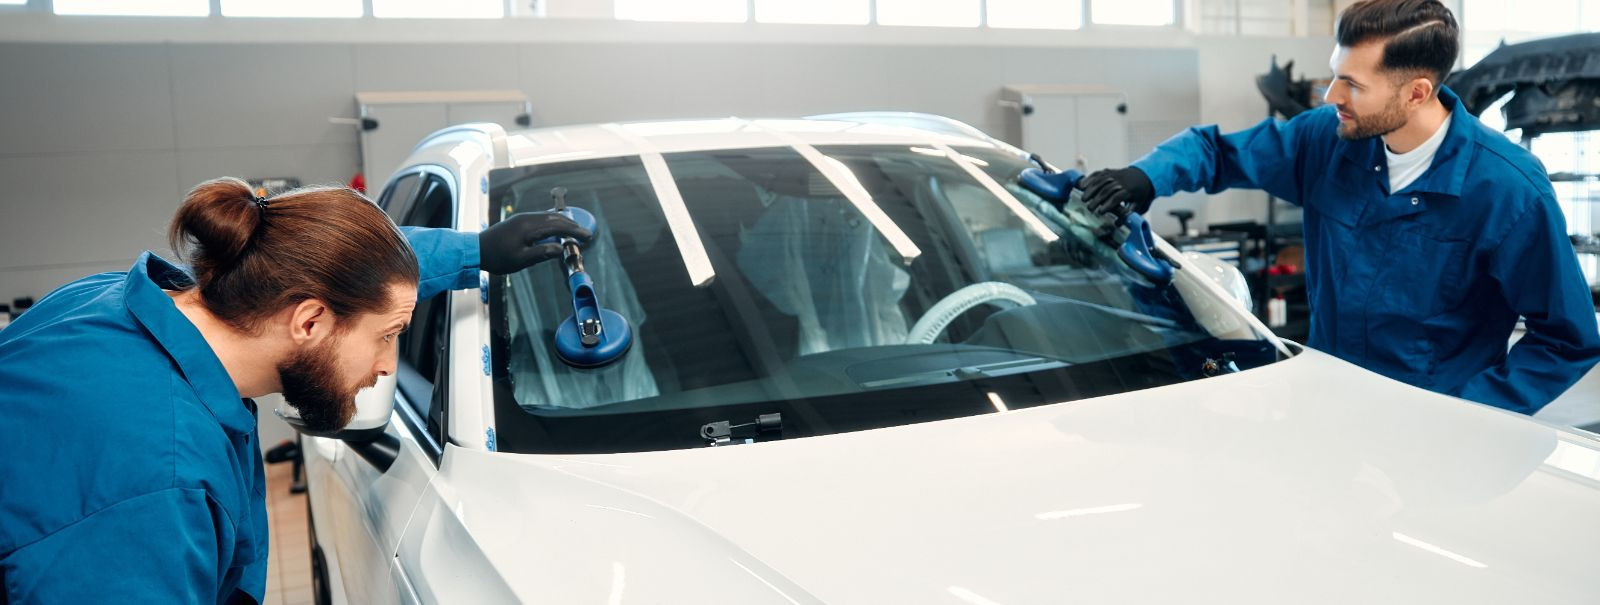 Mobiilne klaasiparandus on revolutsiooniliselt muutnud sõidukite omanike ja autoparkide haldajate lähenemist klaasikahjustustele. Need teenused toovad parandust